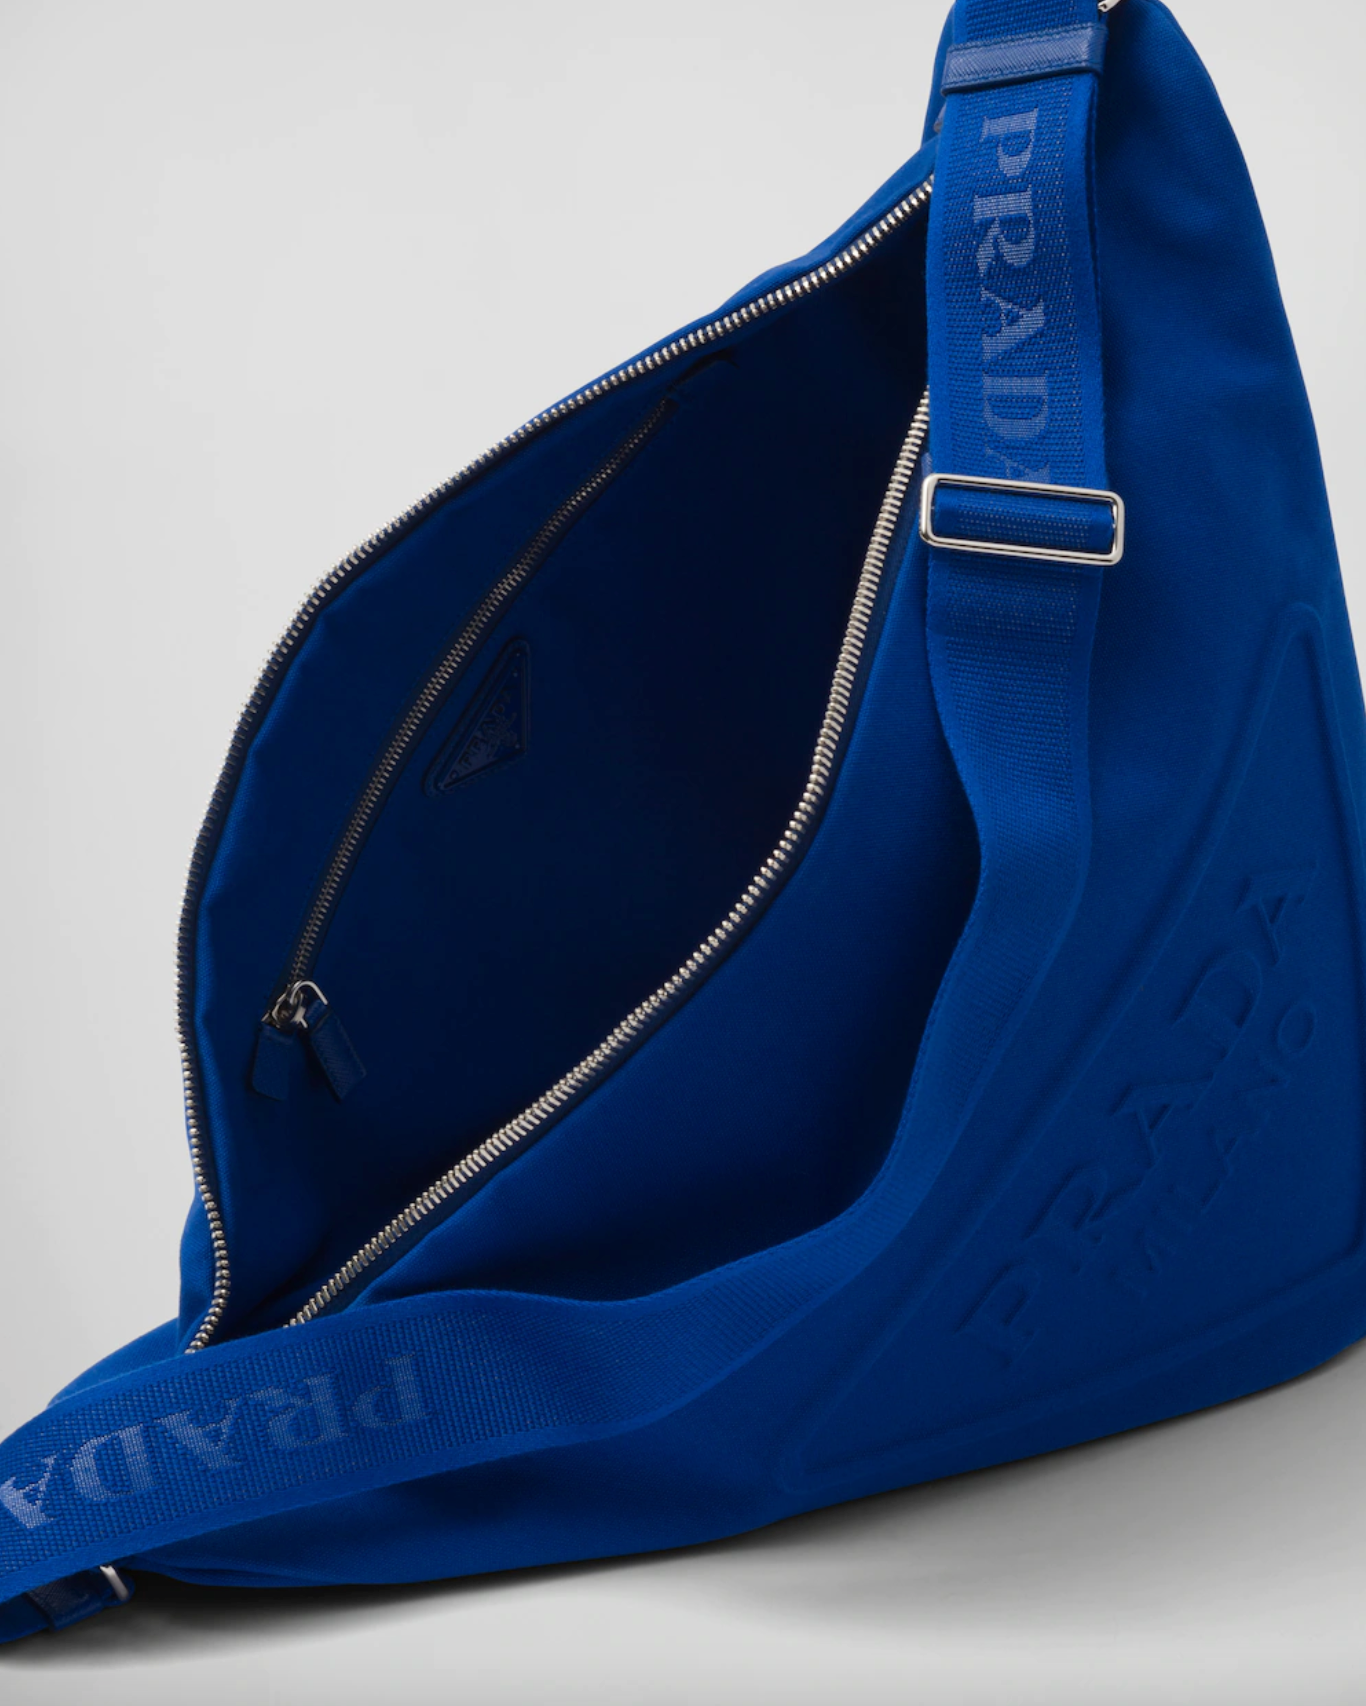 CANVAS TRIANGLE SHOULDER BAG LARGE - COBALT BLUE